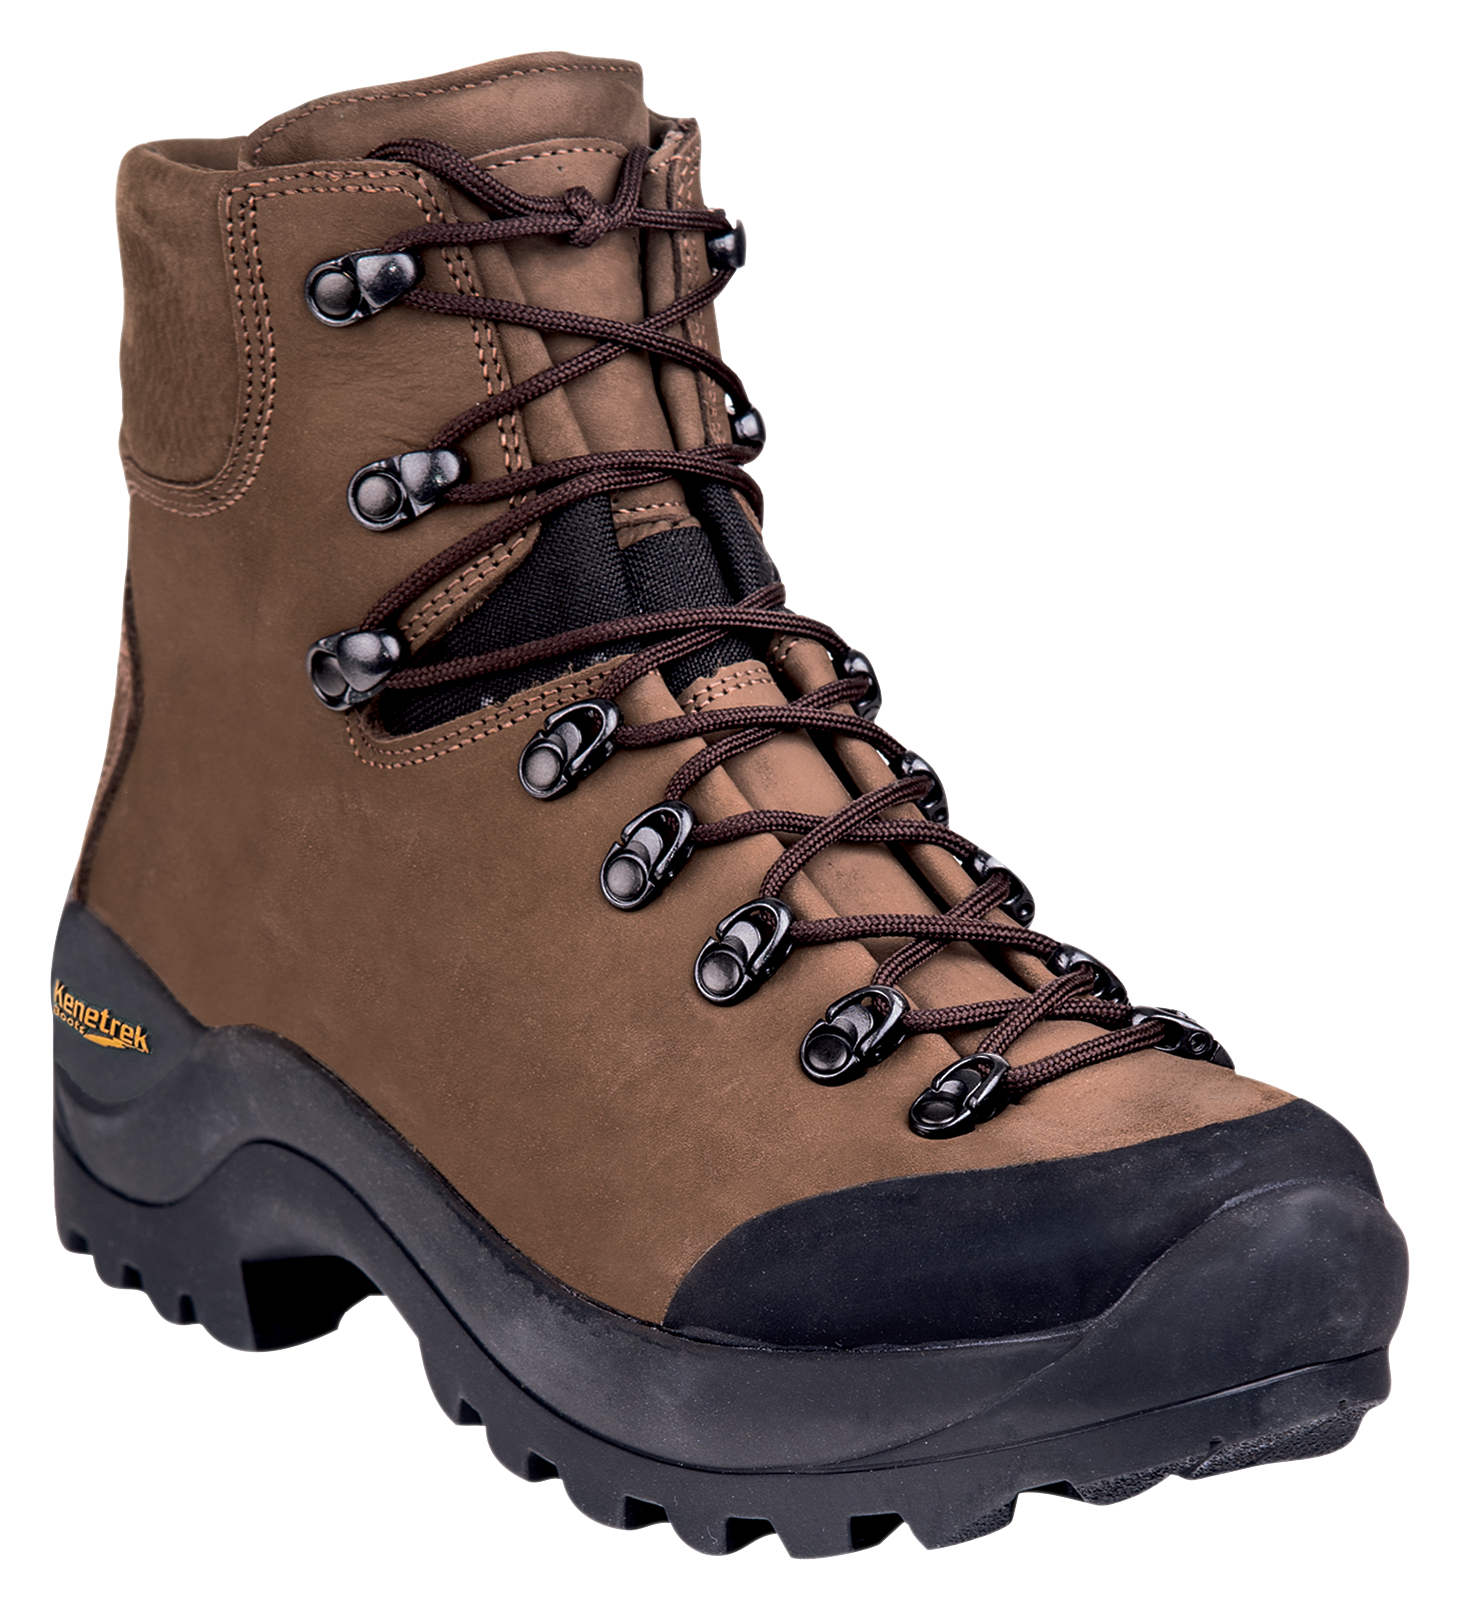 Kenetrek Desert Guide Hunting Boots for Men - Brown - 11.5W